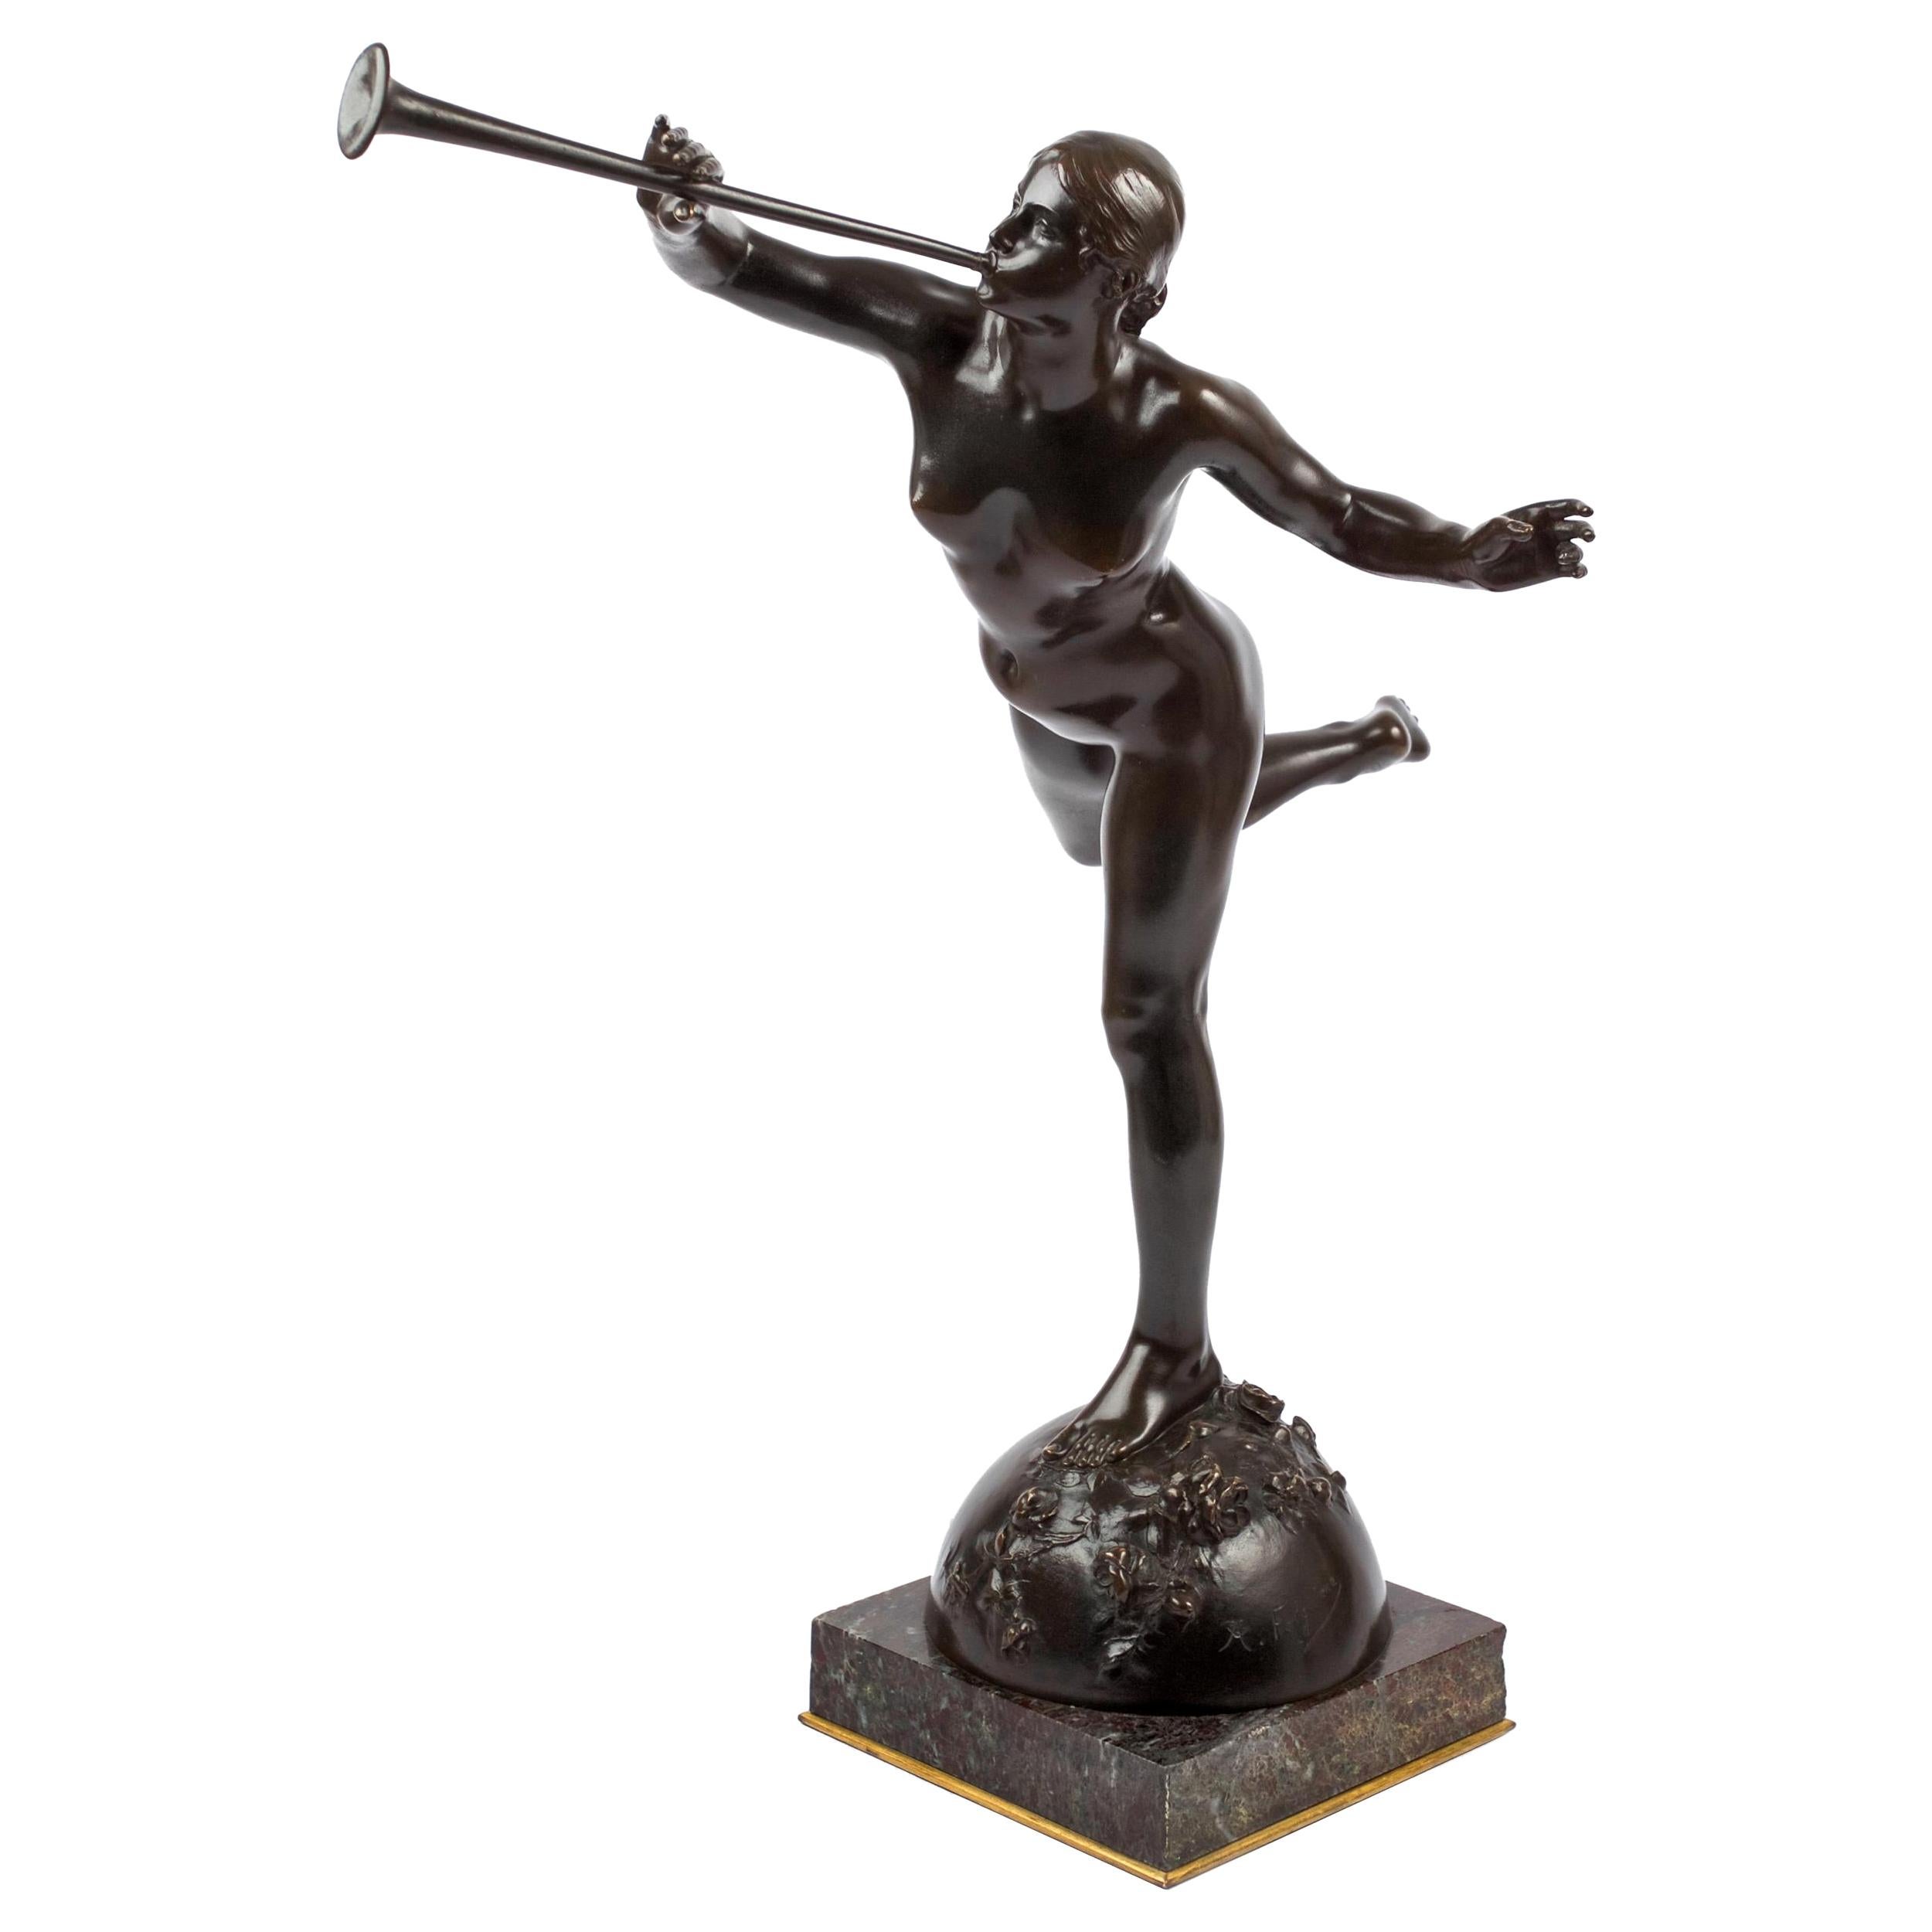 Bronze ancien français « La Renommée » (Fame) d'Alexandre Falguiere & Susse